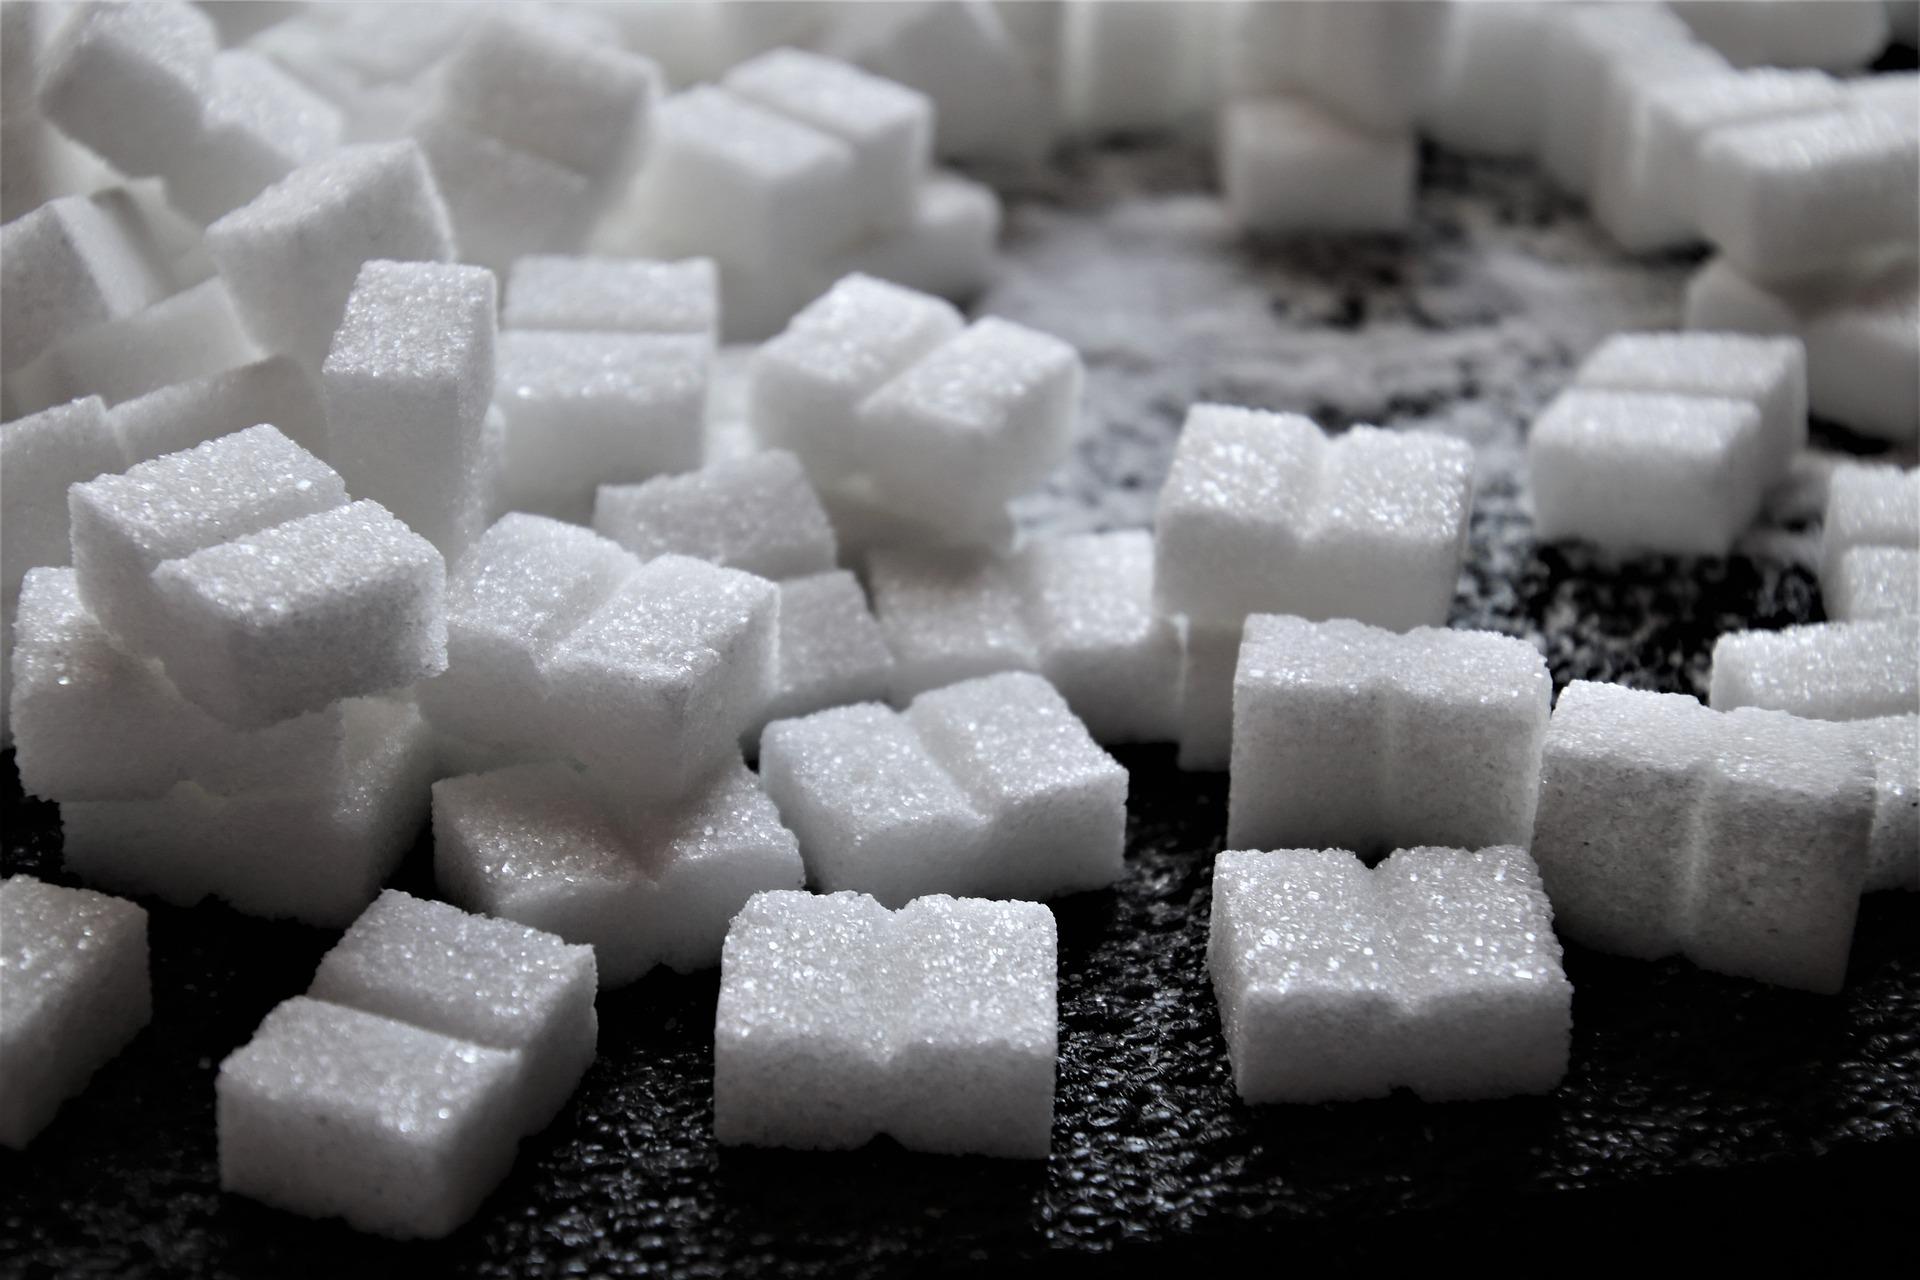 W lipcu sprzedano 13,3 mln kg cukru w sklepach małoformatowych